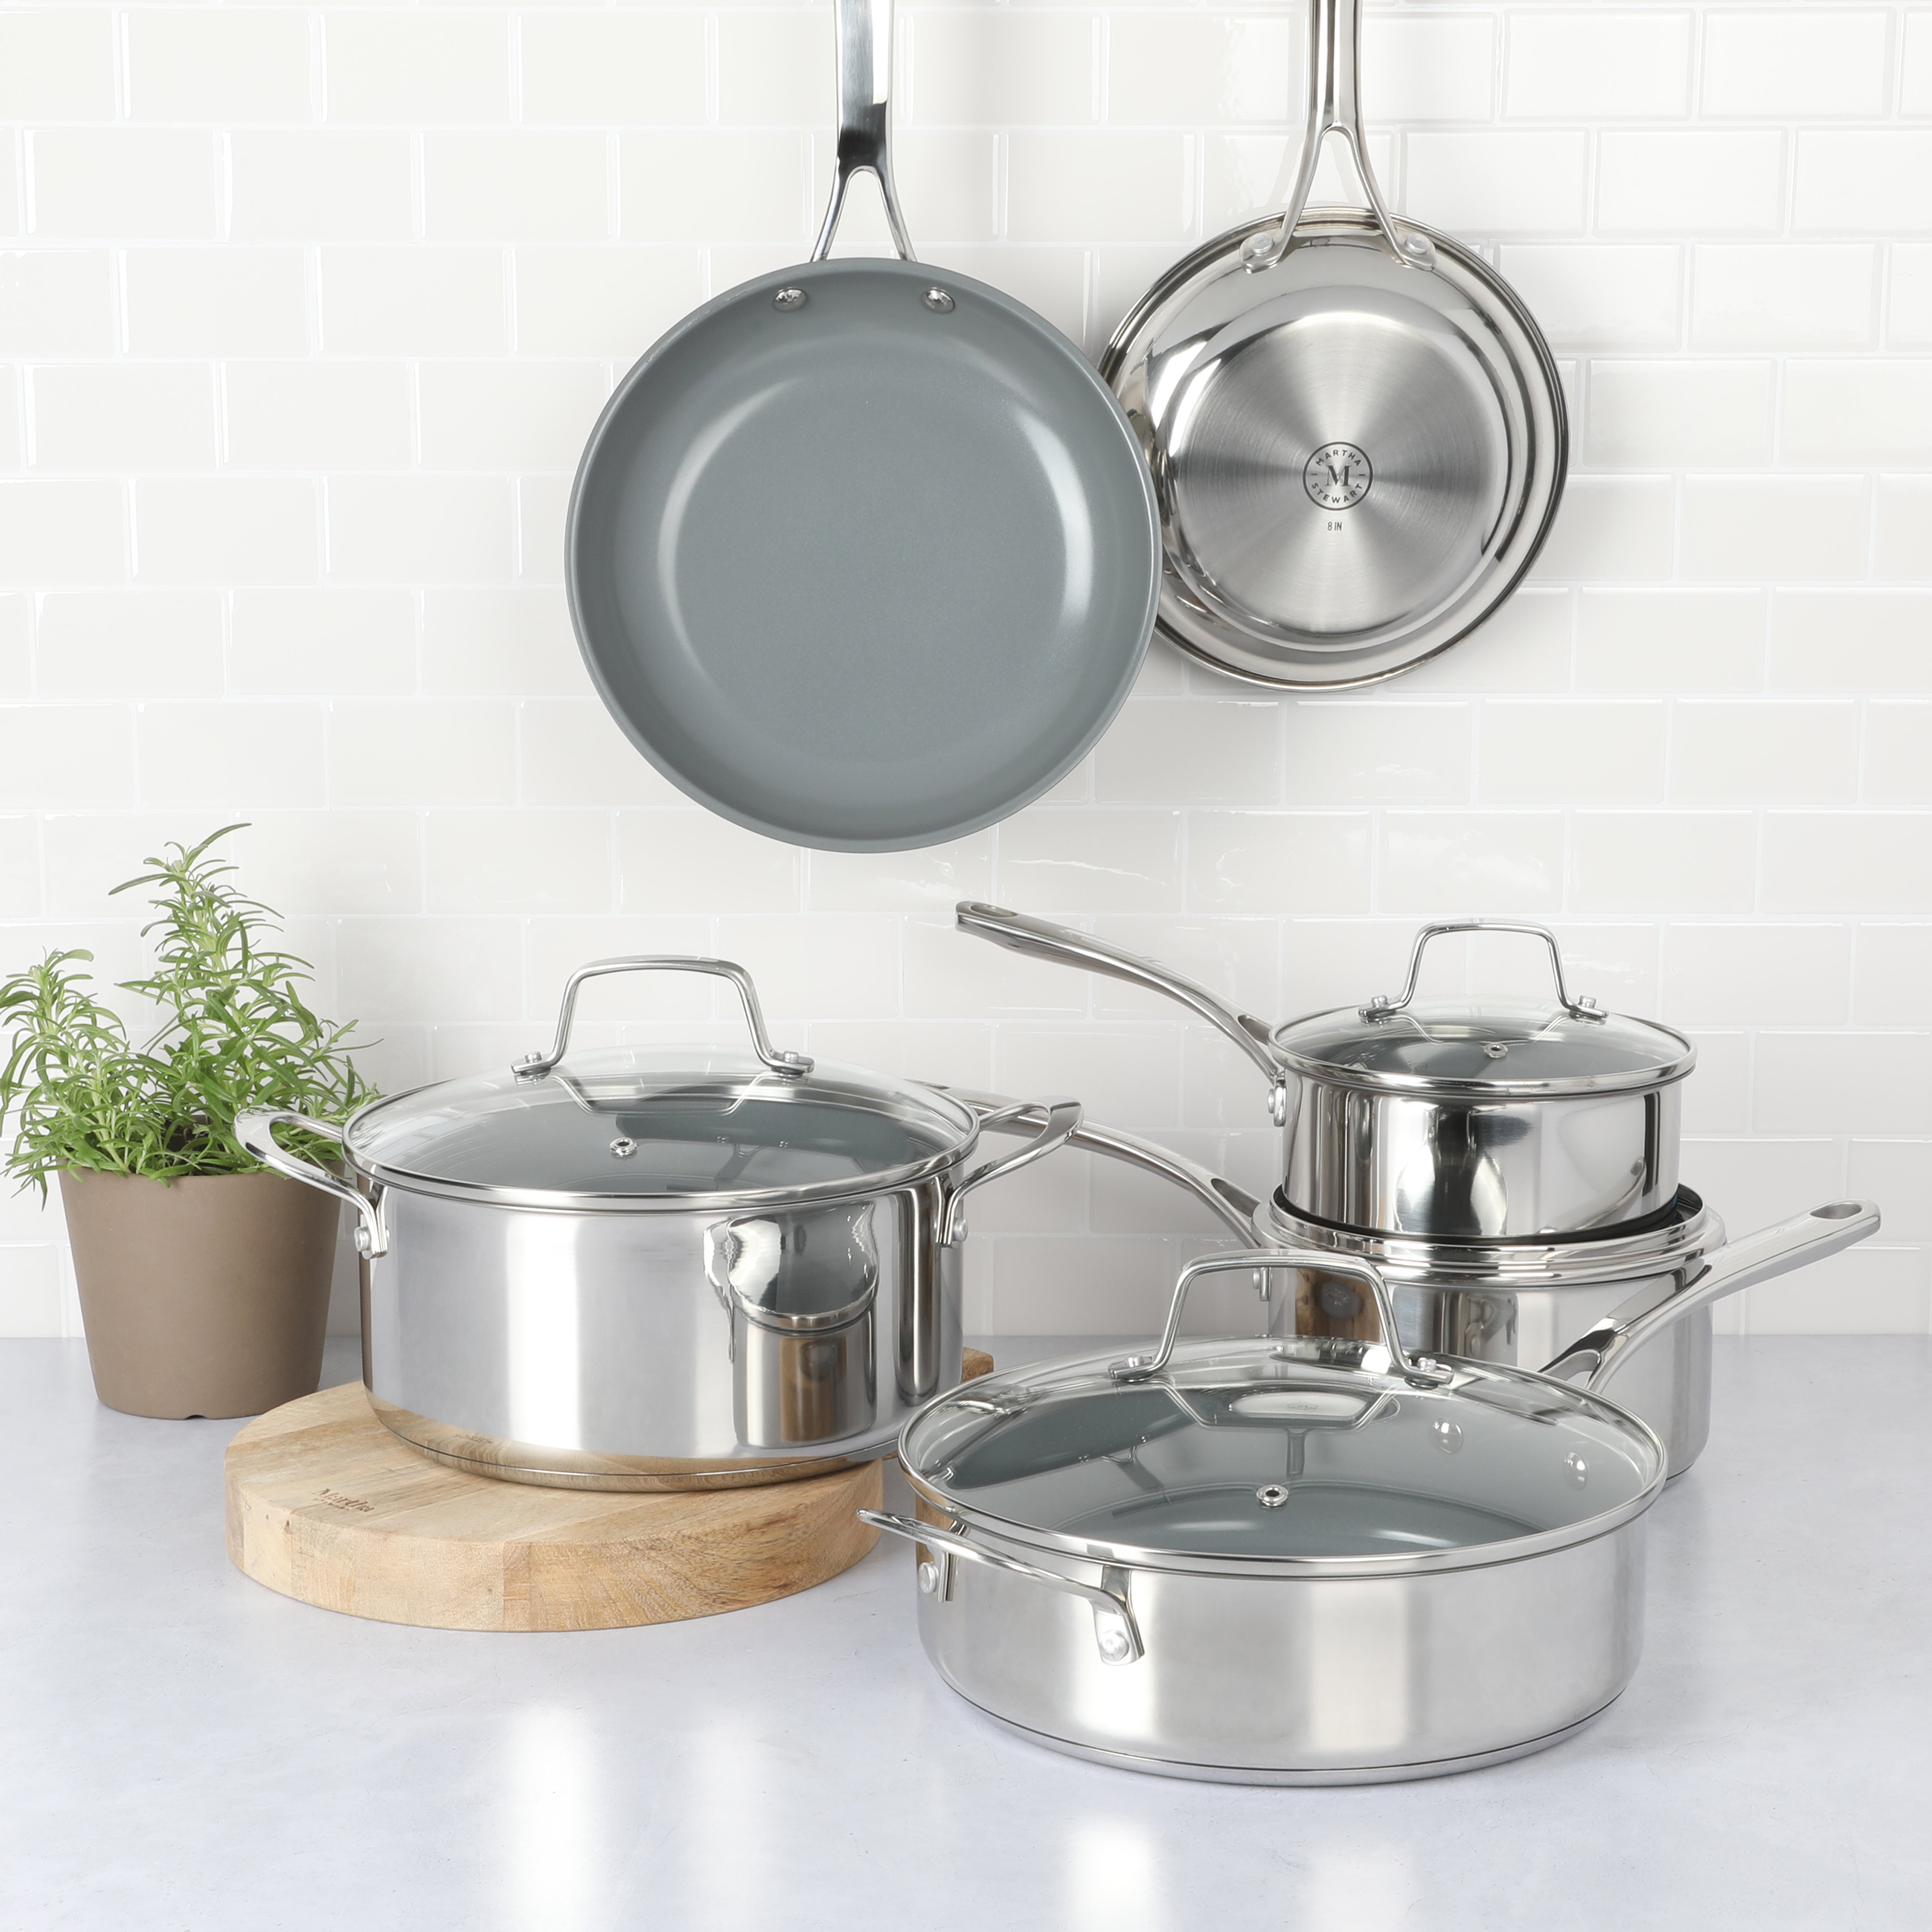 Martha Stewart Delaroux 10-Piece Stainless Steel Cookware Set w/ Ceramic Non-Stick Interior